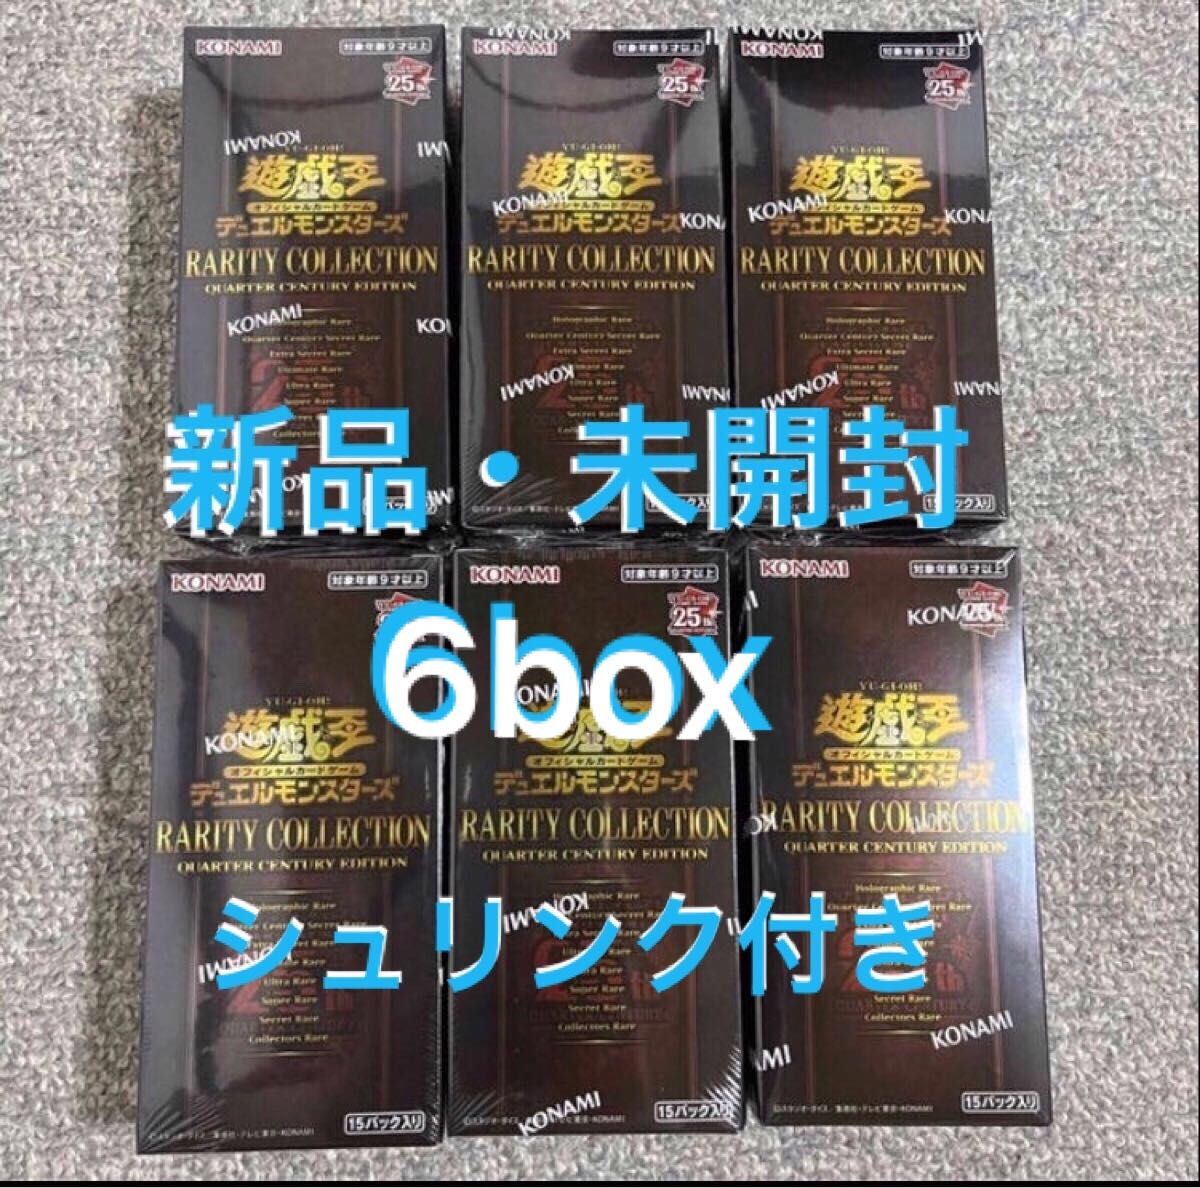 レアリティコレクション 6box 未開封 シュリンク付 レアコレ25th 遊戯王-